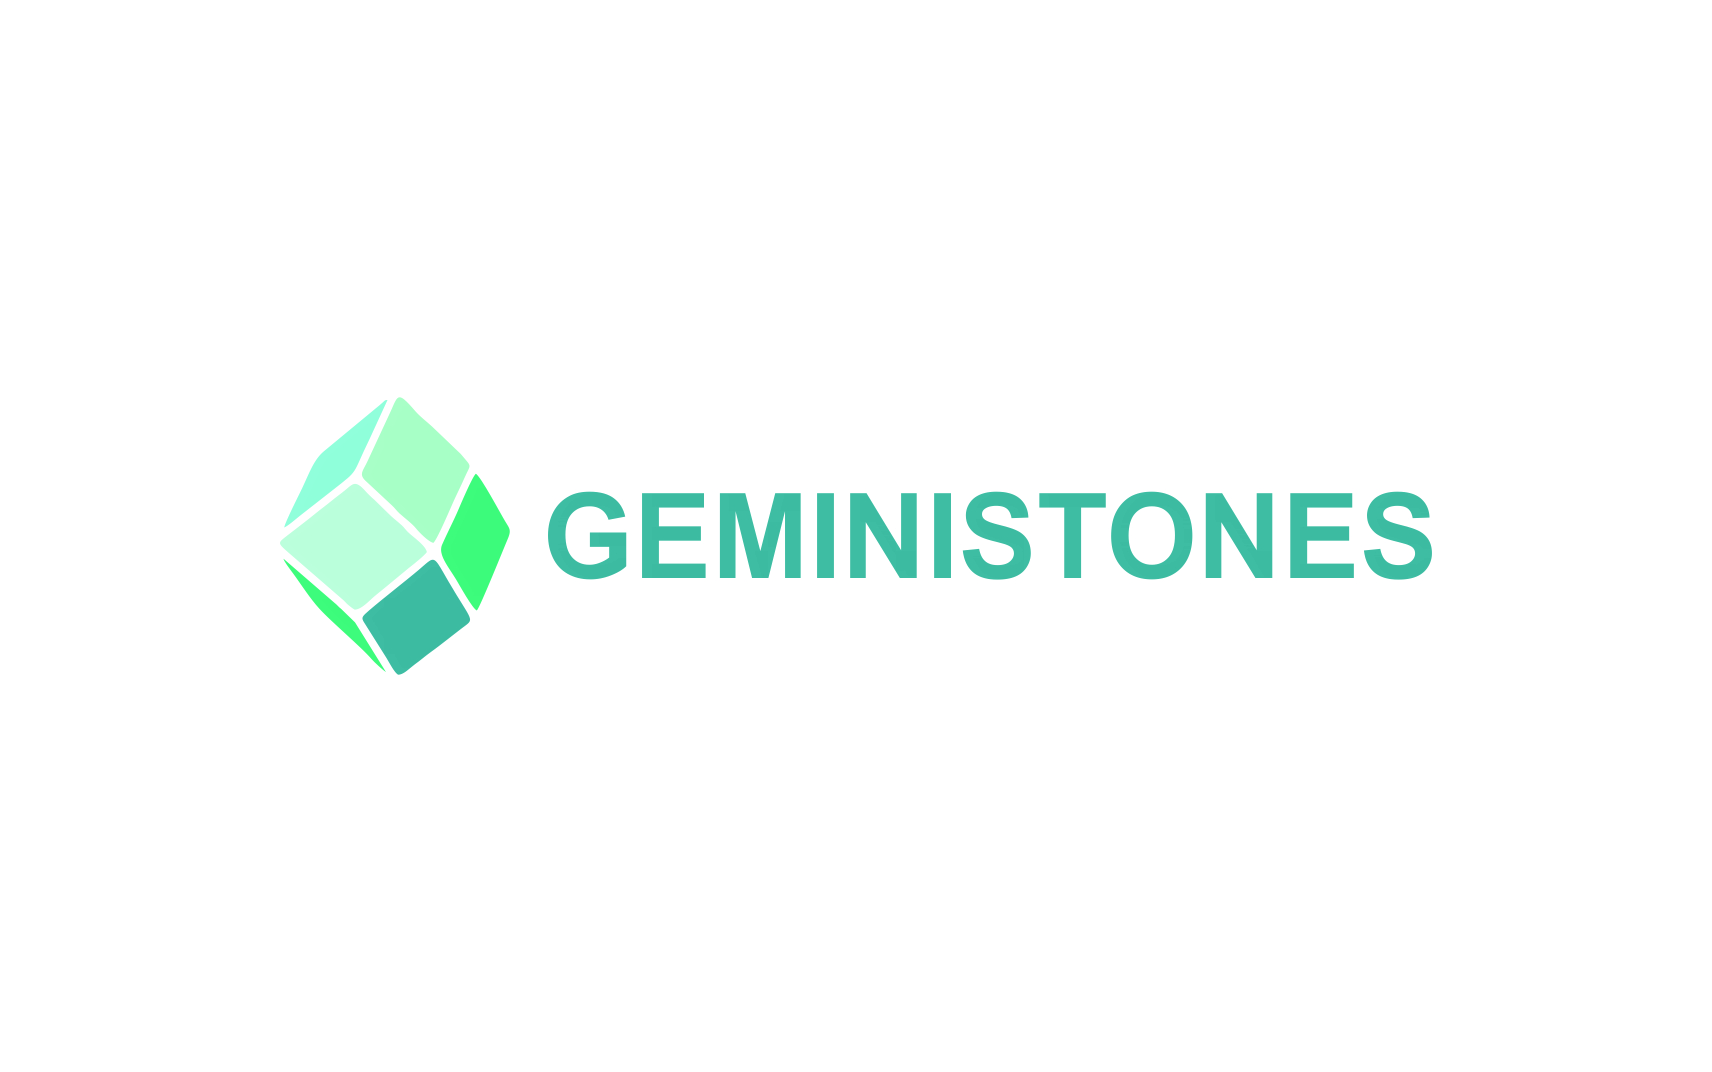 gemini stones logo design